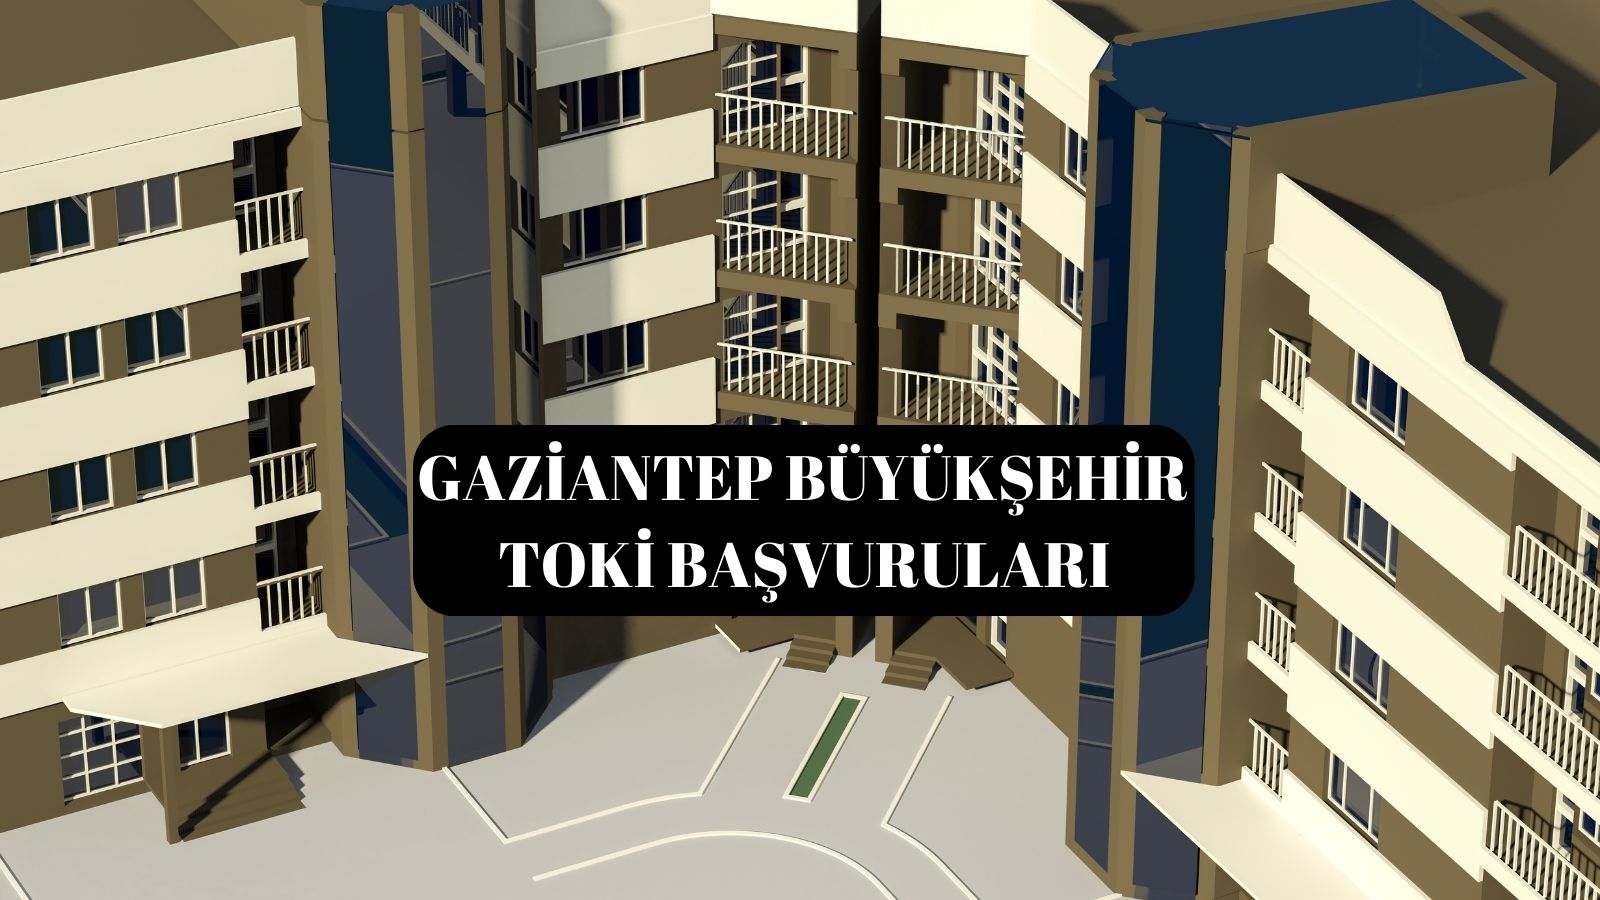 Gaziantep Büyükşehir Toki Başvuruları